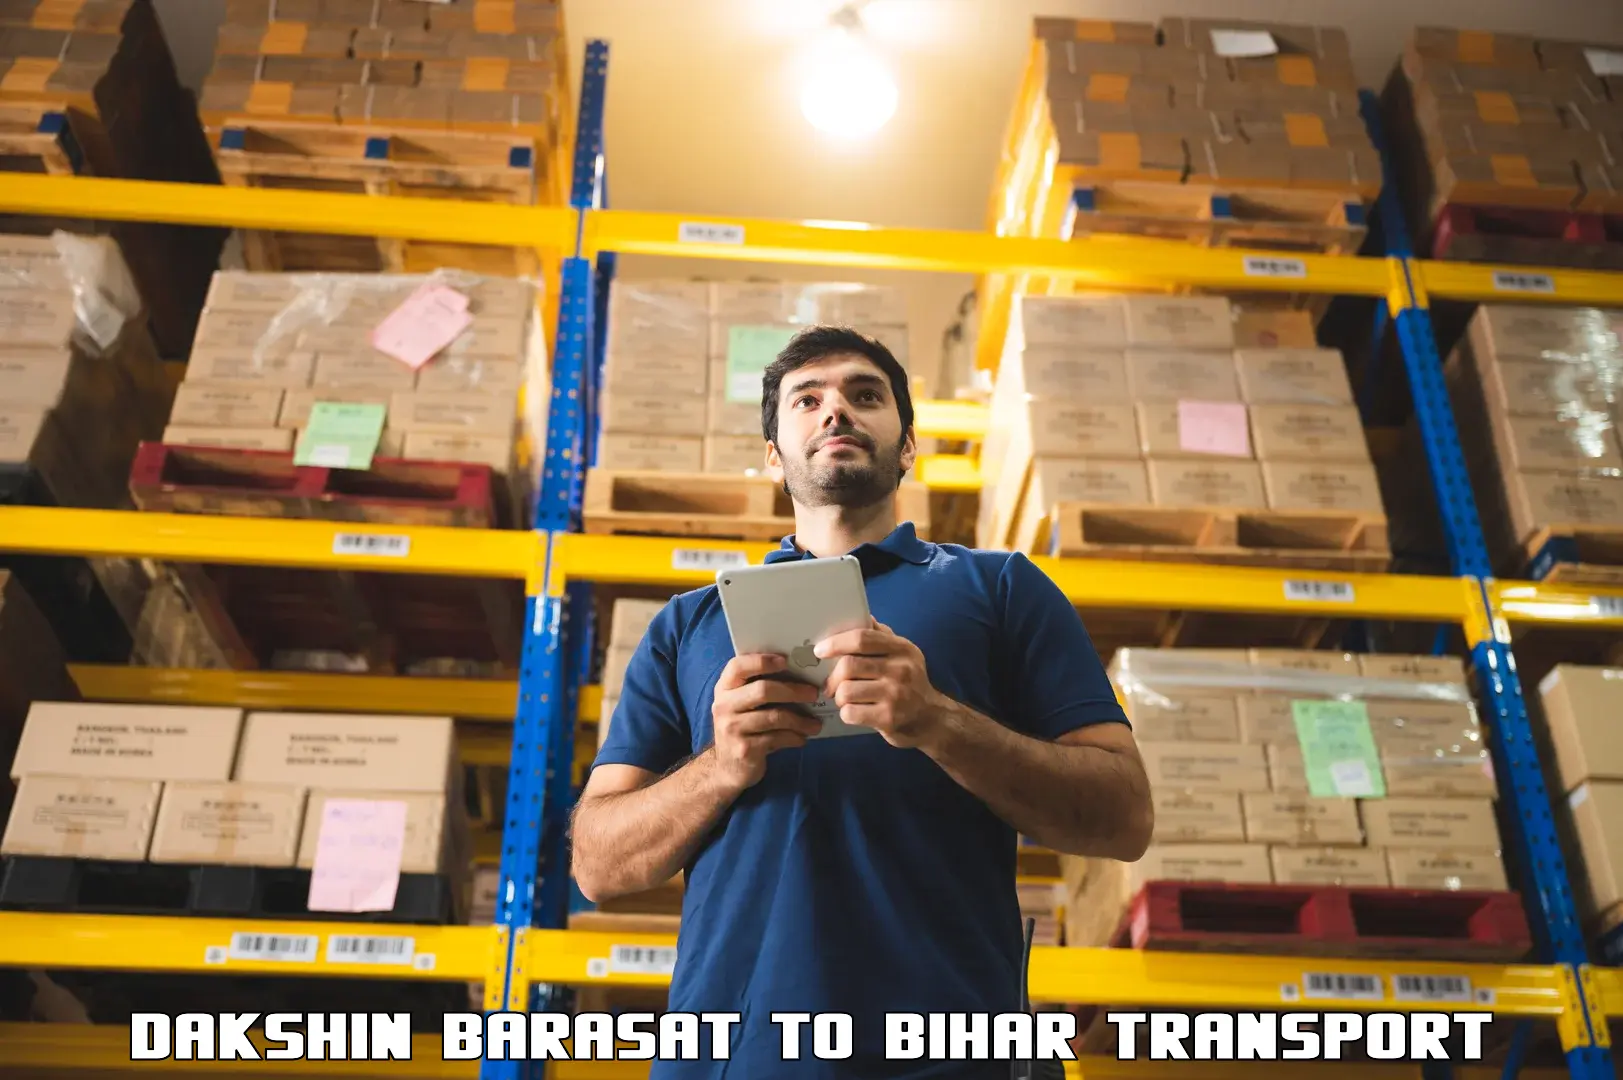 Transport shared services Dakshin Barasat to Bihar Sharif